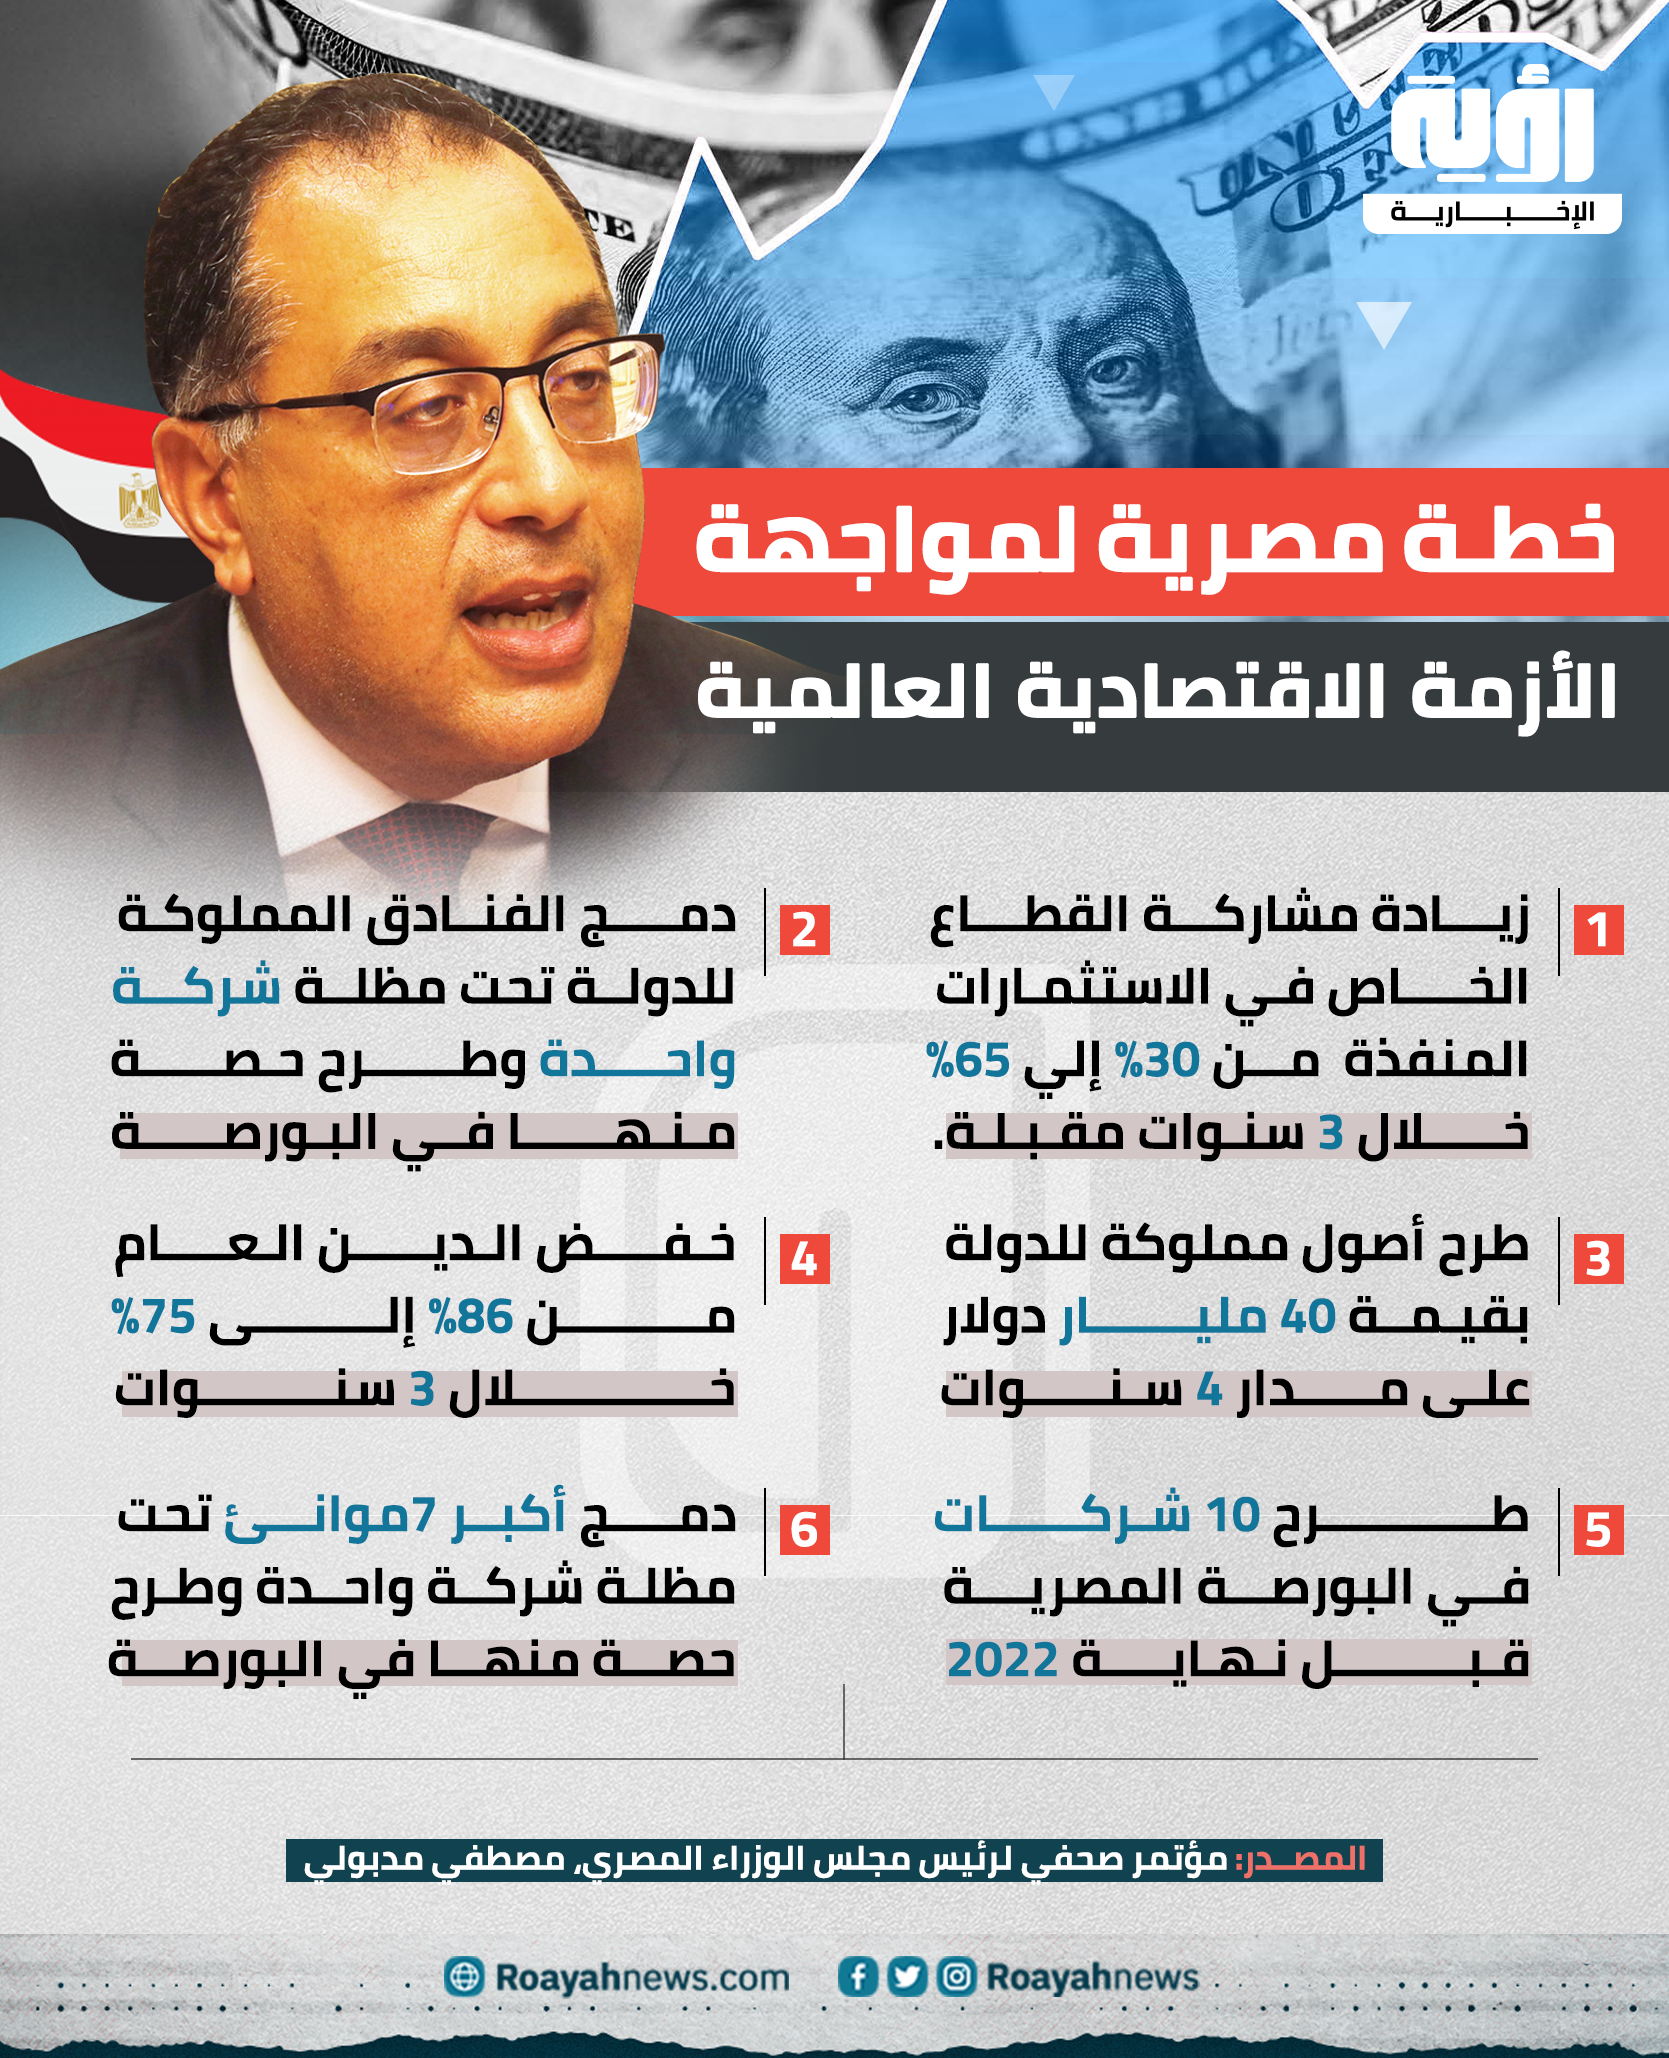 خطة الحكومة المصرية للتعامل مع الأزمة الاقتصادية العالمية 2